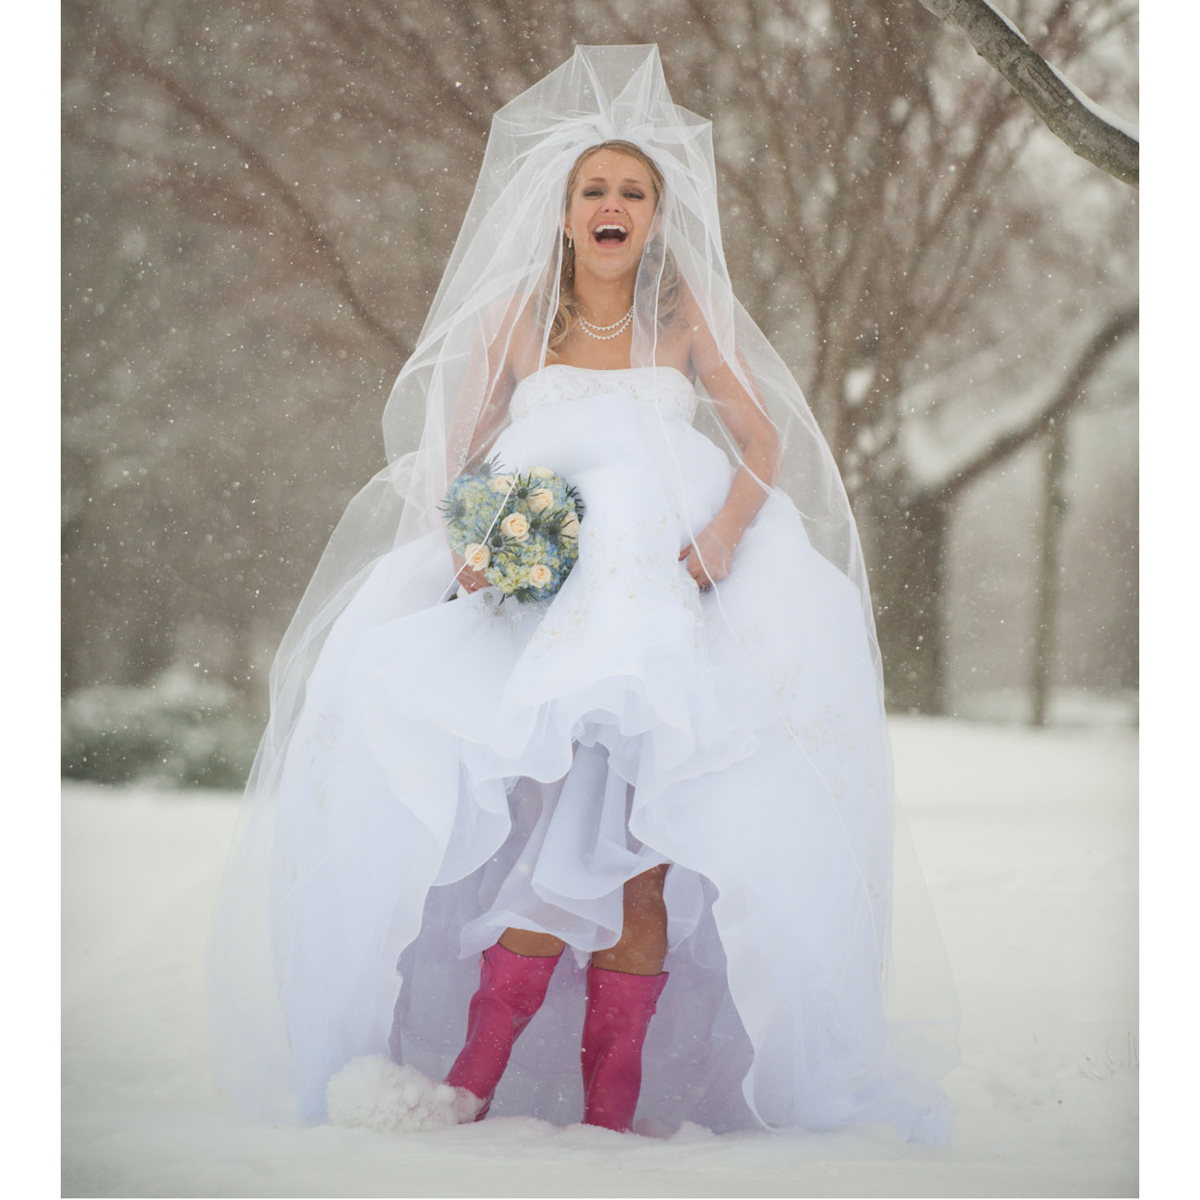 Snow storm bride